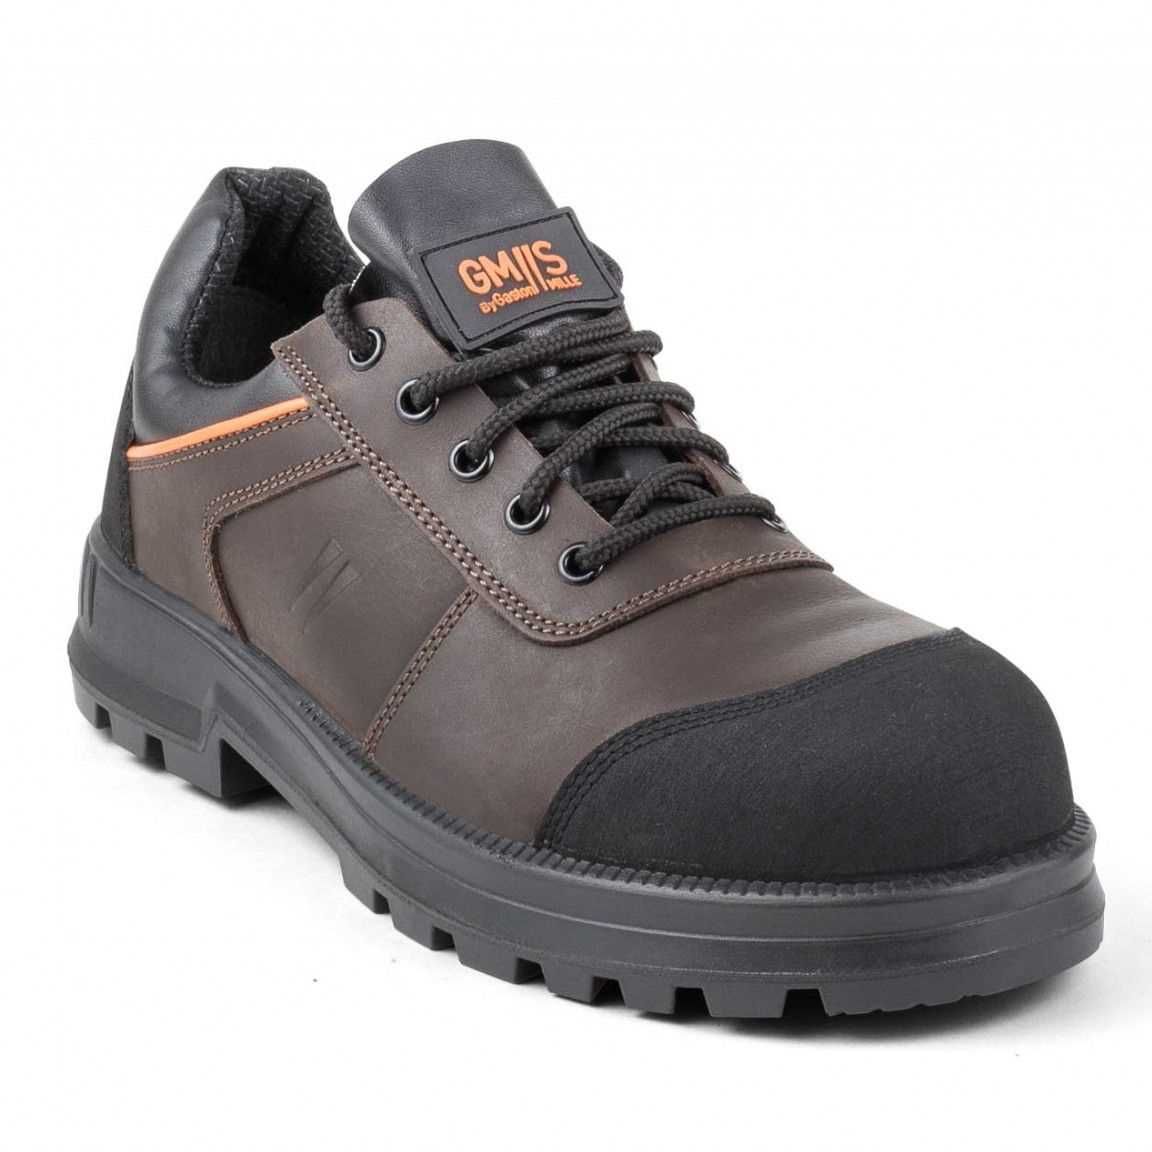 güvenlik ayakkabıları Cigale S3 SRC / GCIG3 kaymaz / anti-perforasyon / darbeye dayanıklı